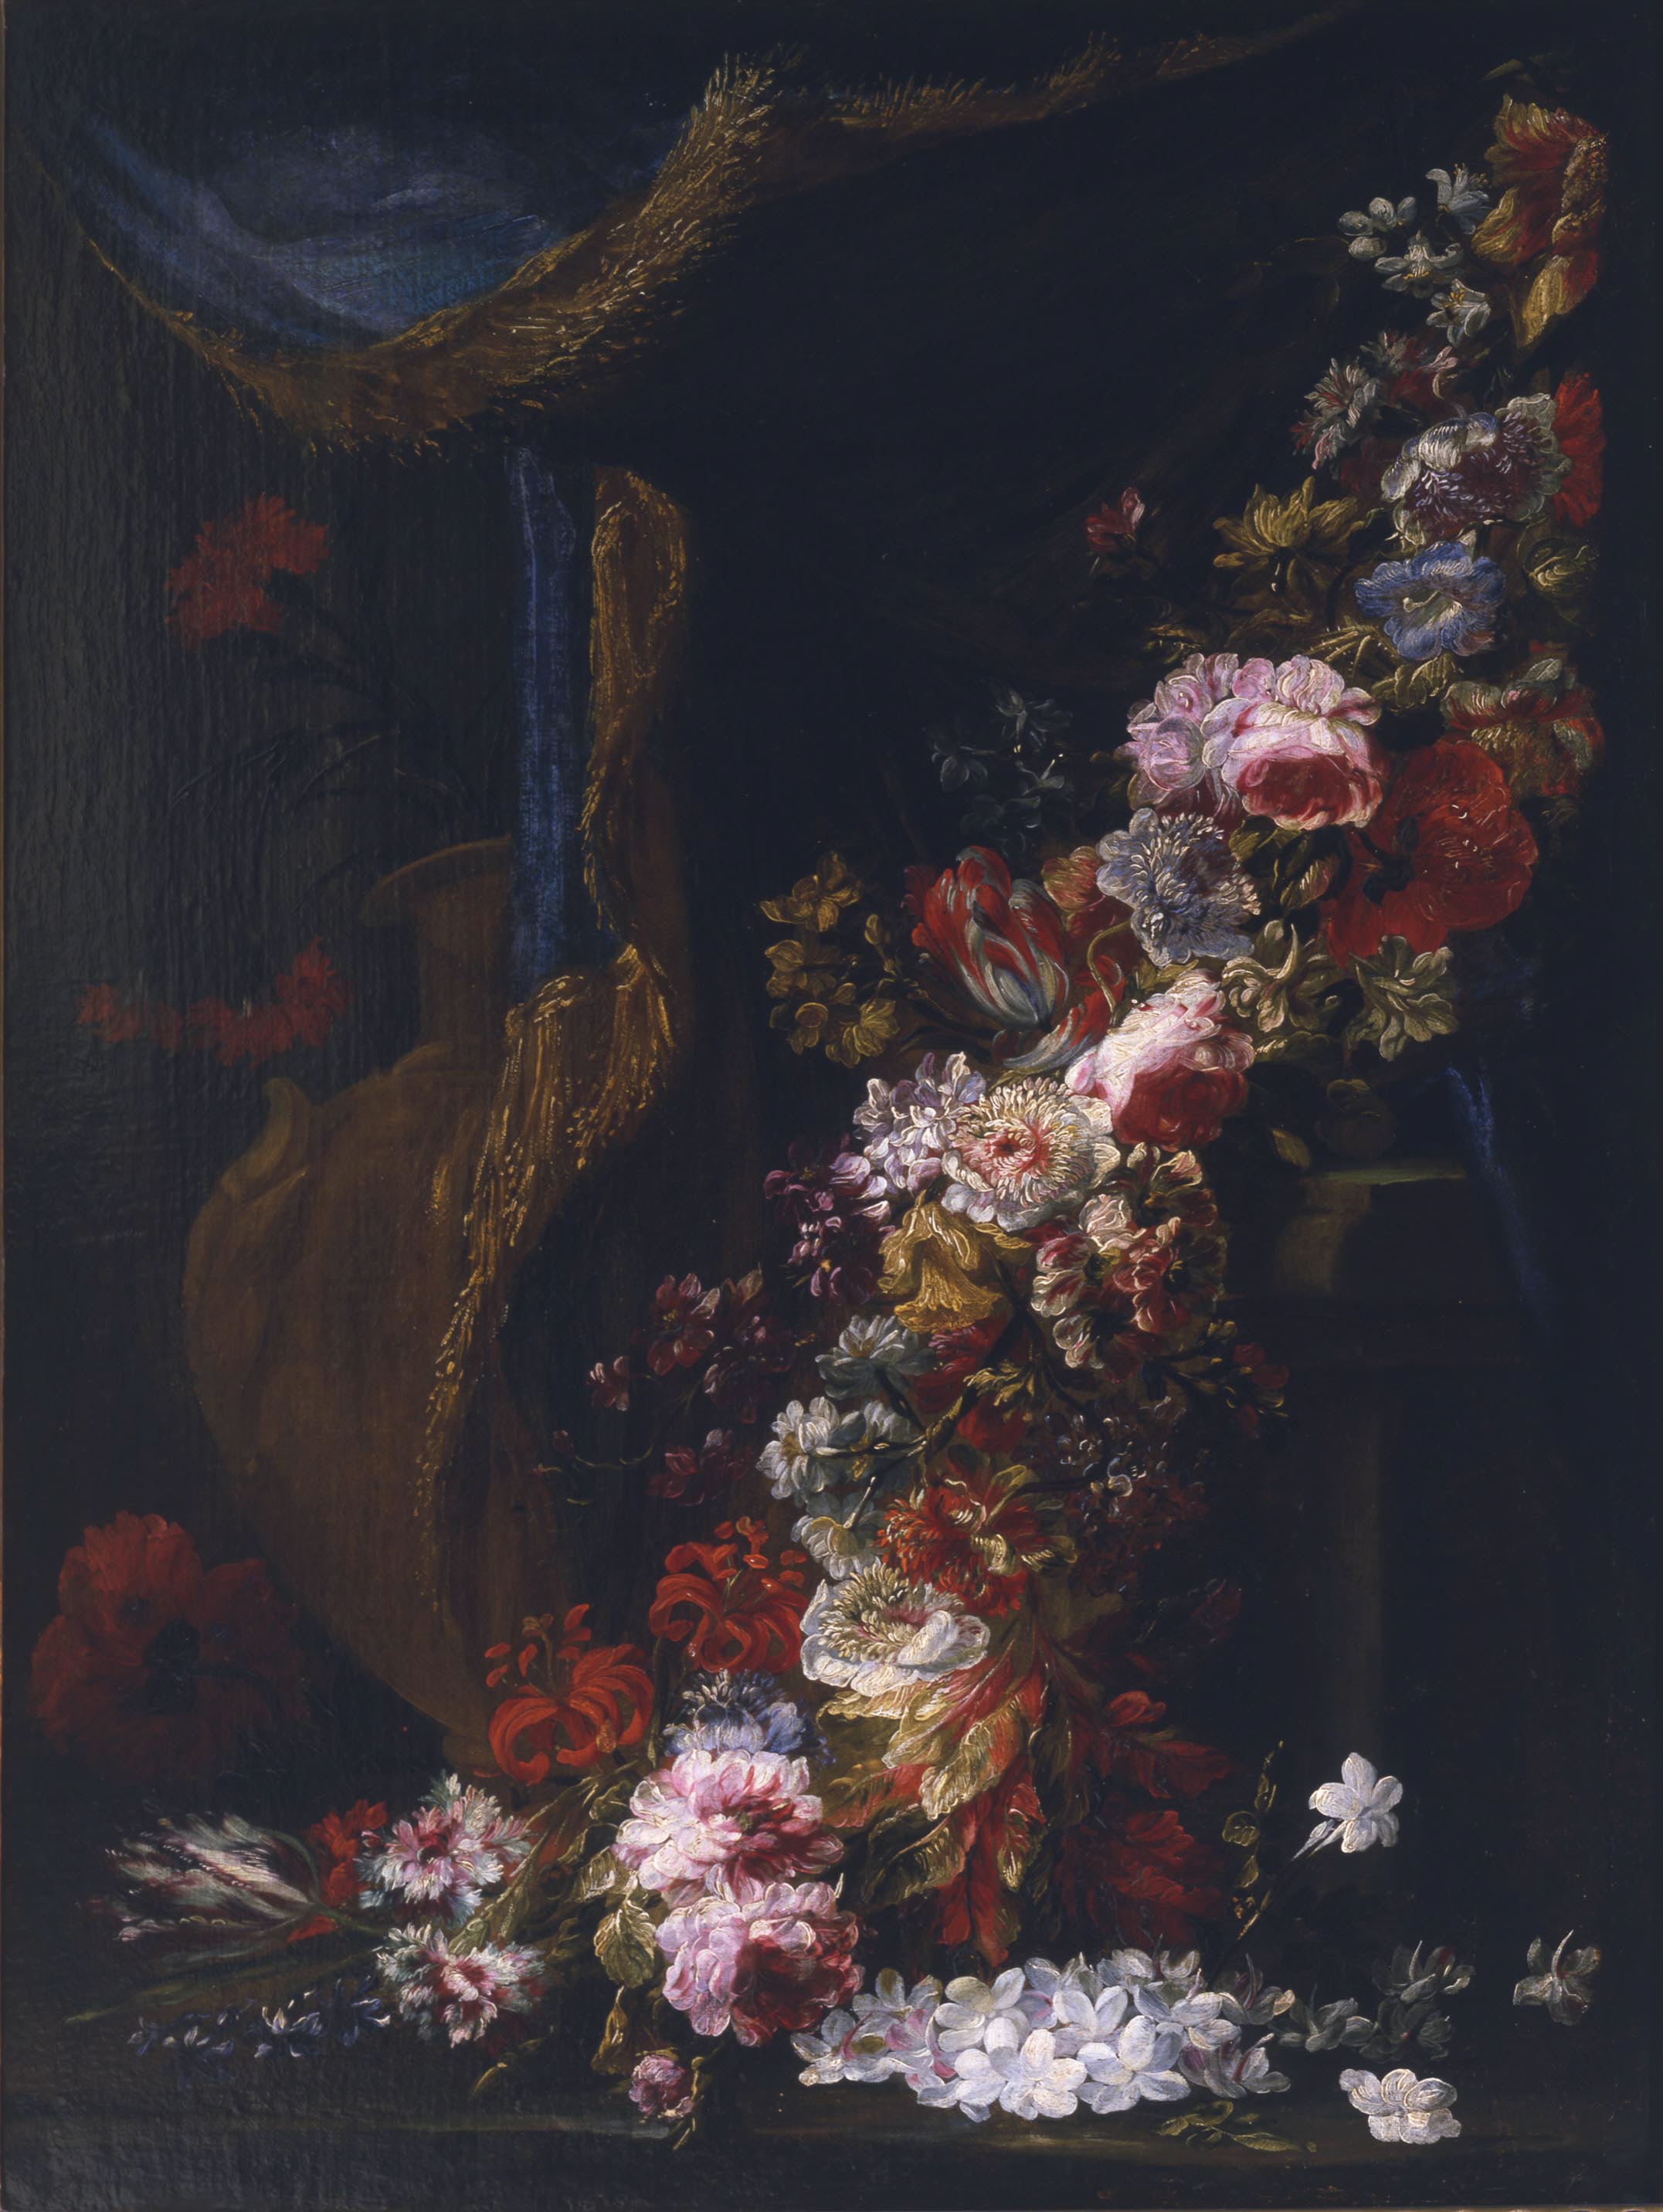 Arellano, Juan de - Guirnalda de flores y cortina